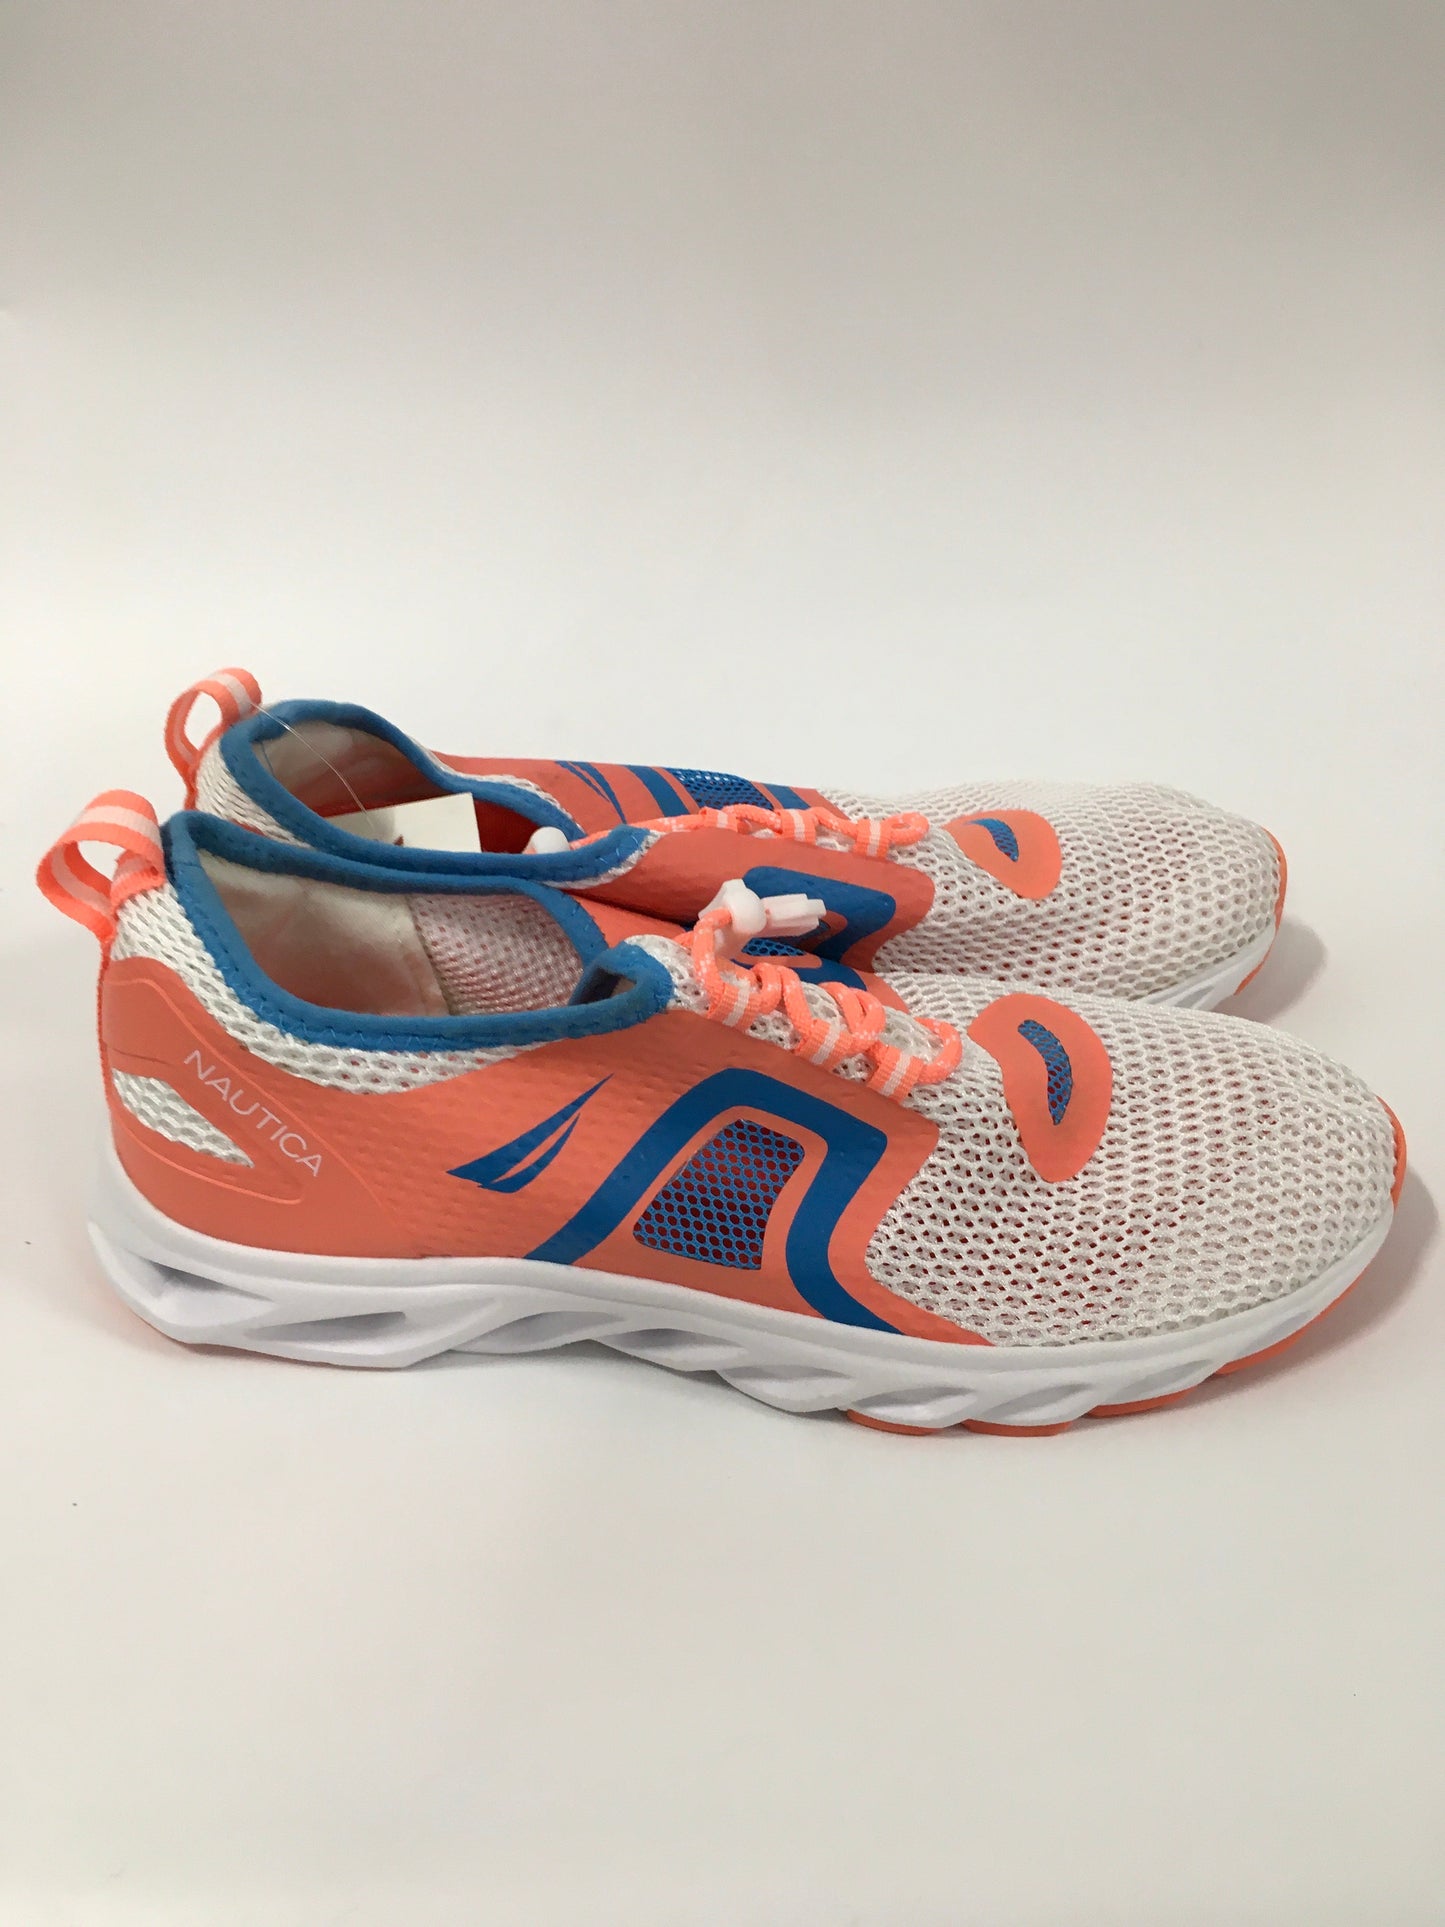 Orange Blue Shoes Athletic Nautica, Size 11